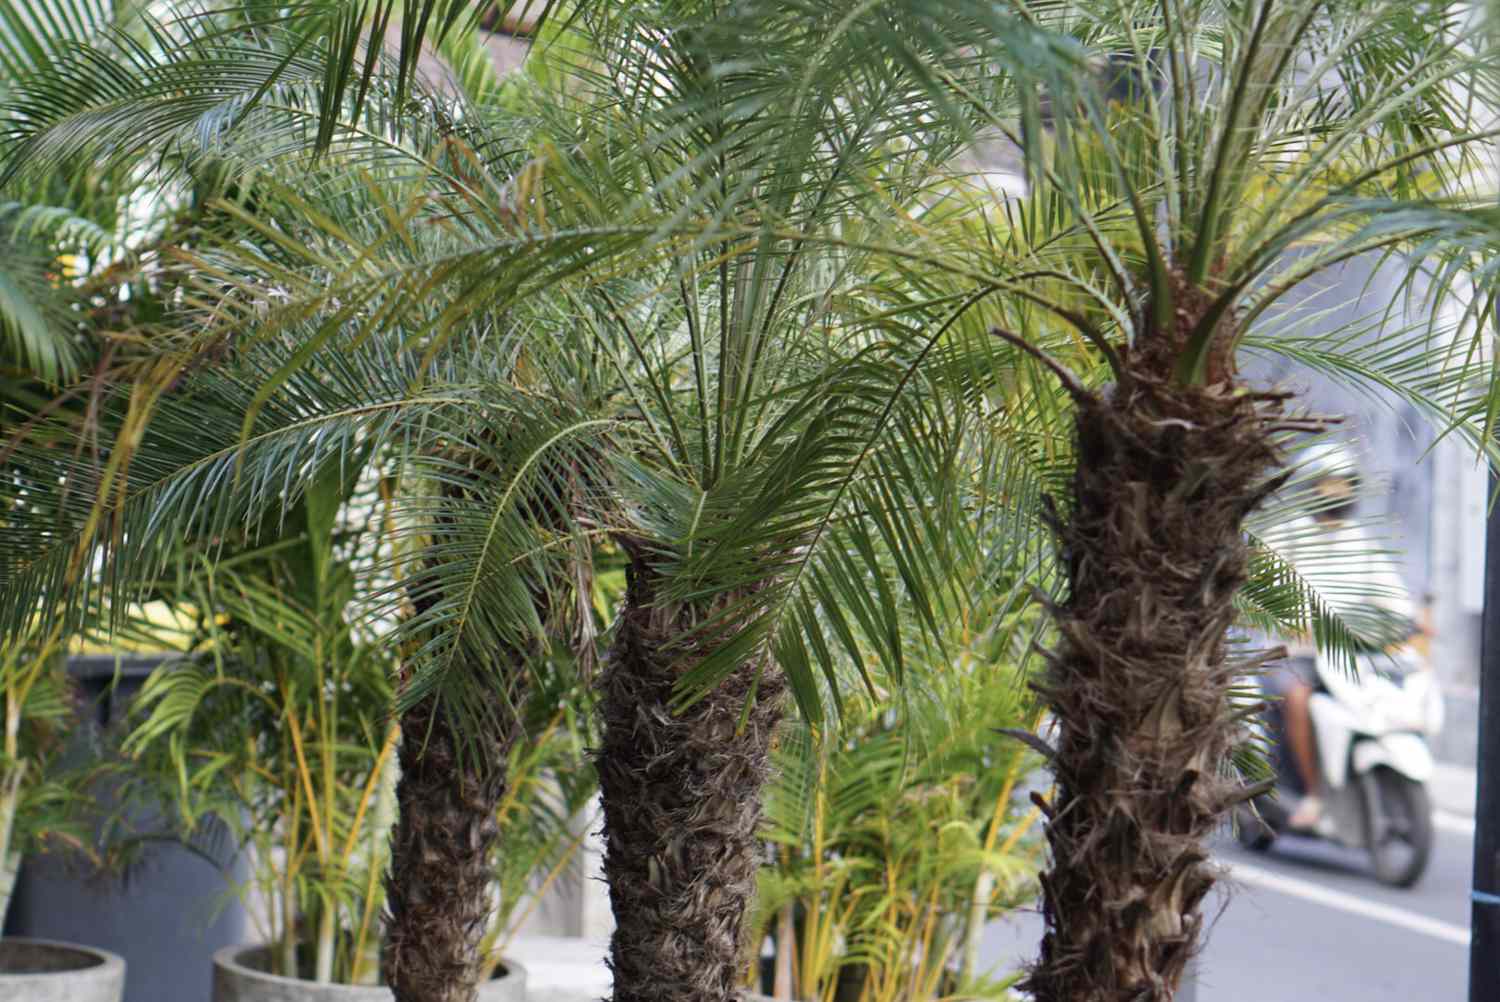 Robellini-Palmen mit stacheligem Stamm und ausladenden Wedeln, die nebeneinander aufgereiht sind